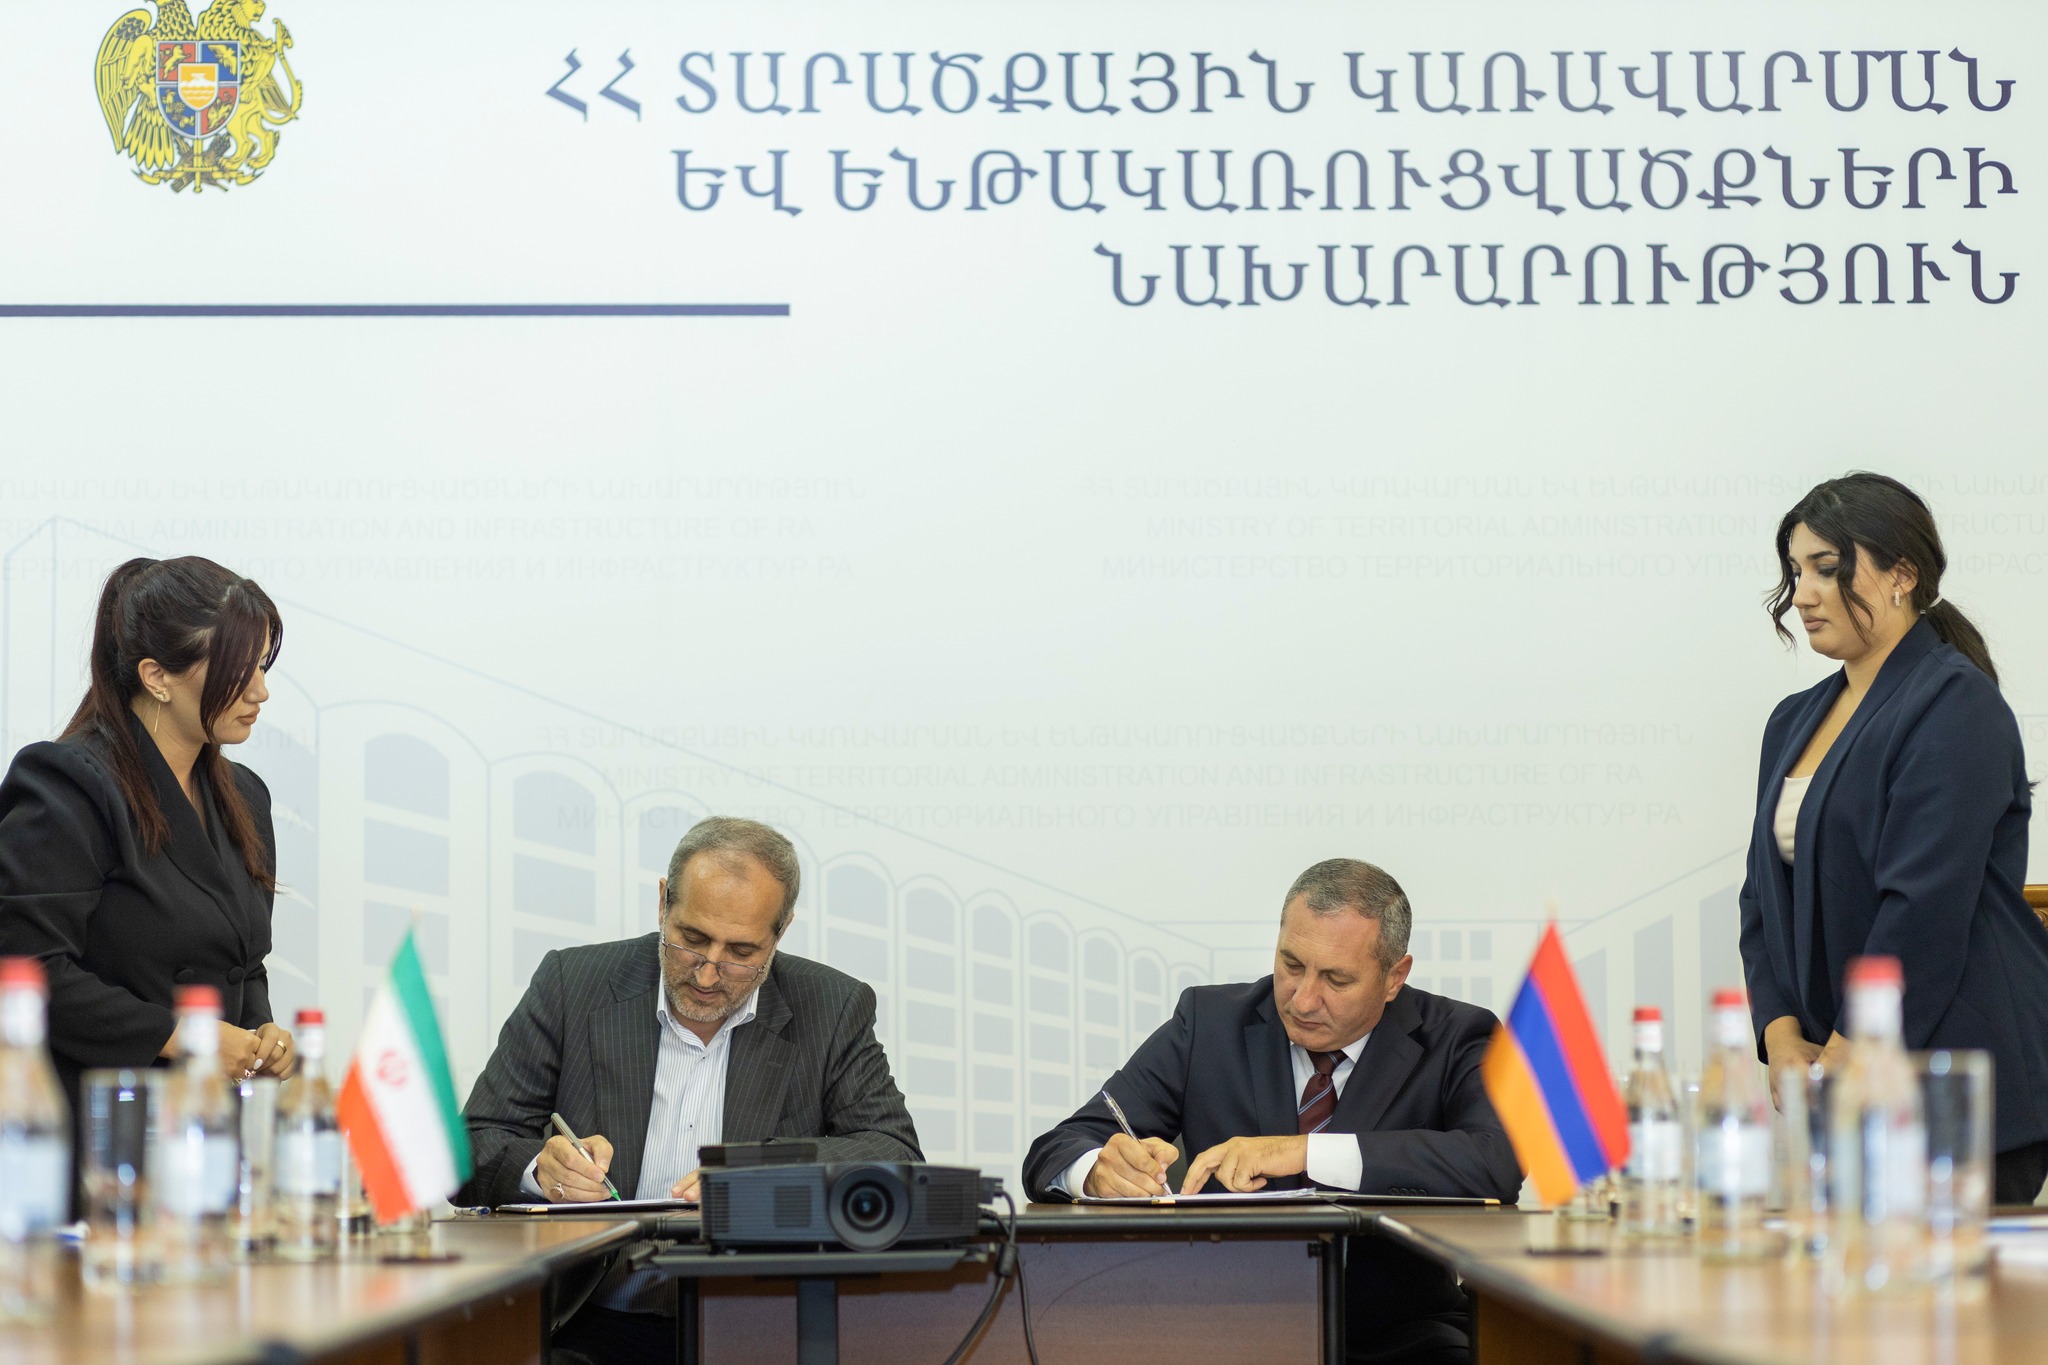 Գազ՝ էլեկտրաէներգիայի դիմաց պայմանագիրը կերկարաձգվի. հայ-իրանական փաստաթուղթ է ստորագրվել